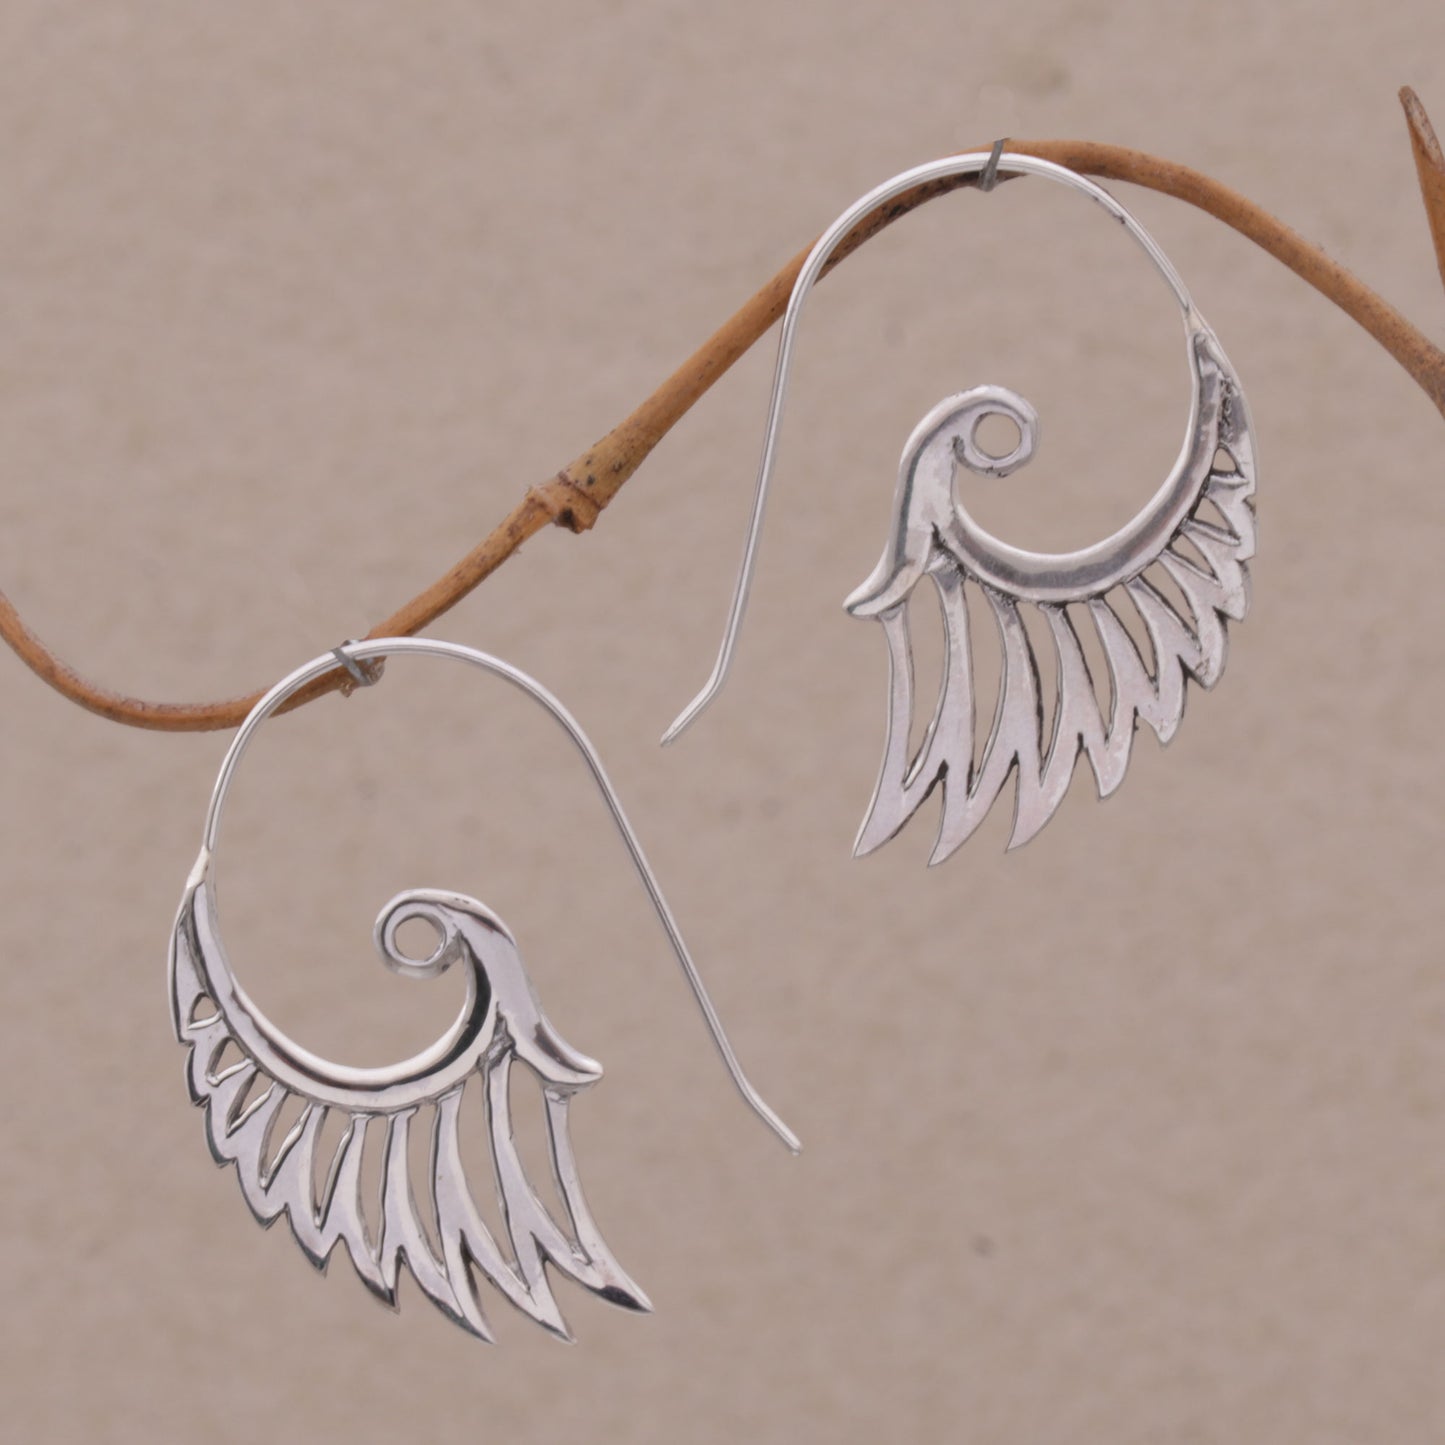 Winged Beauty Spiral Sterling Silver Earrings